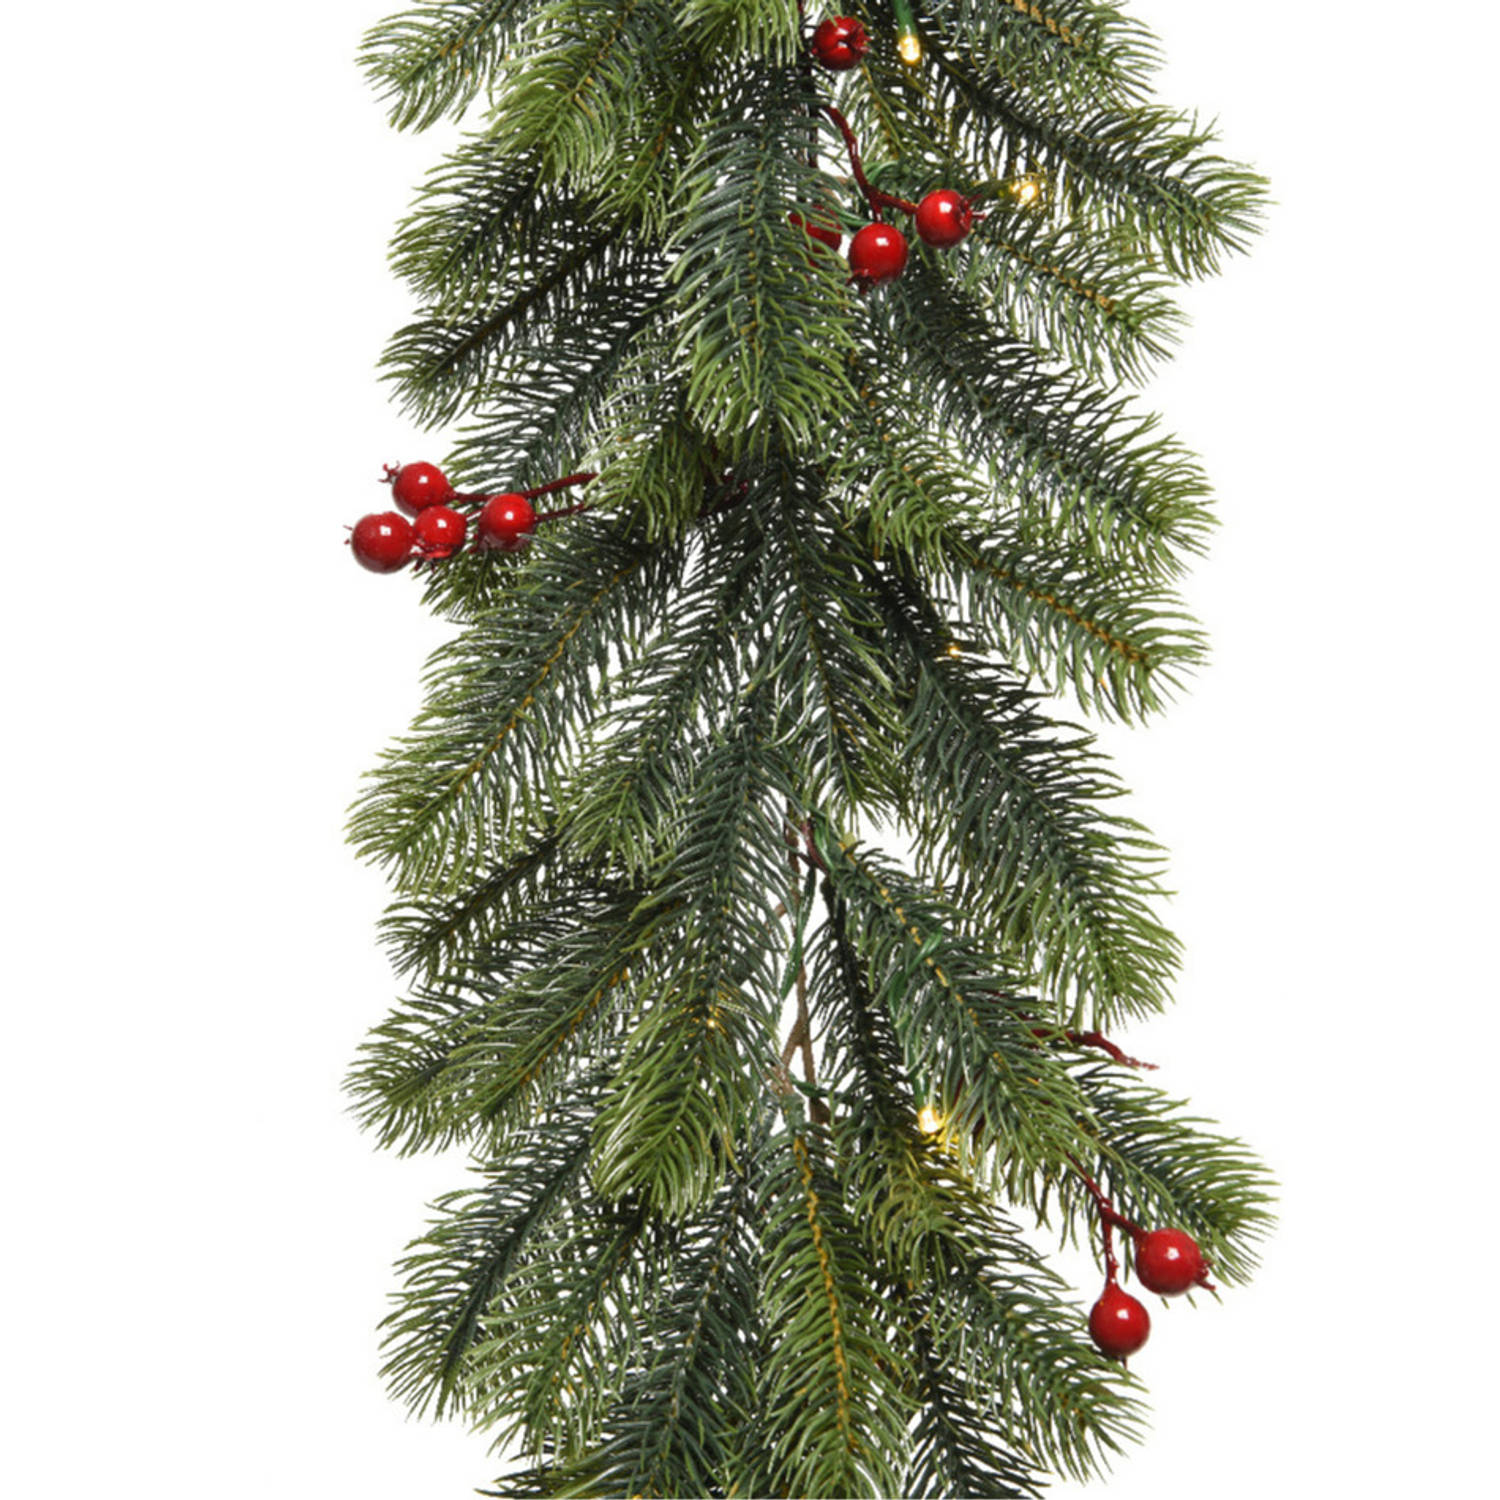 Kerst dennenslinger/dennenguirlande groen met decoratie 30 x 180 cm - Kerstslingers met kerstverlichting - Guirlandes kerstversiering